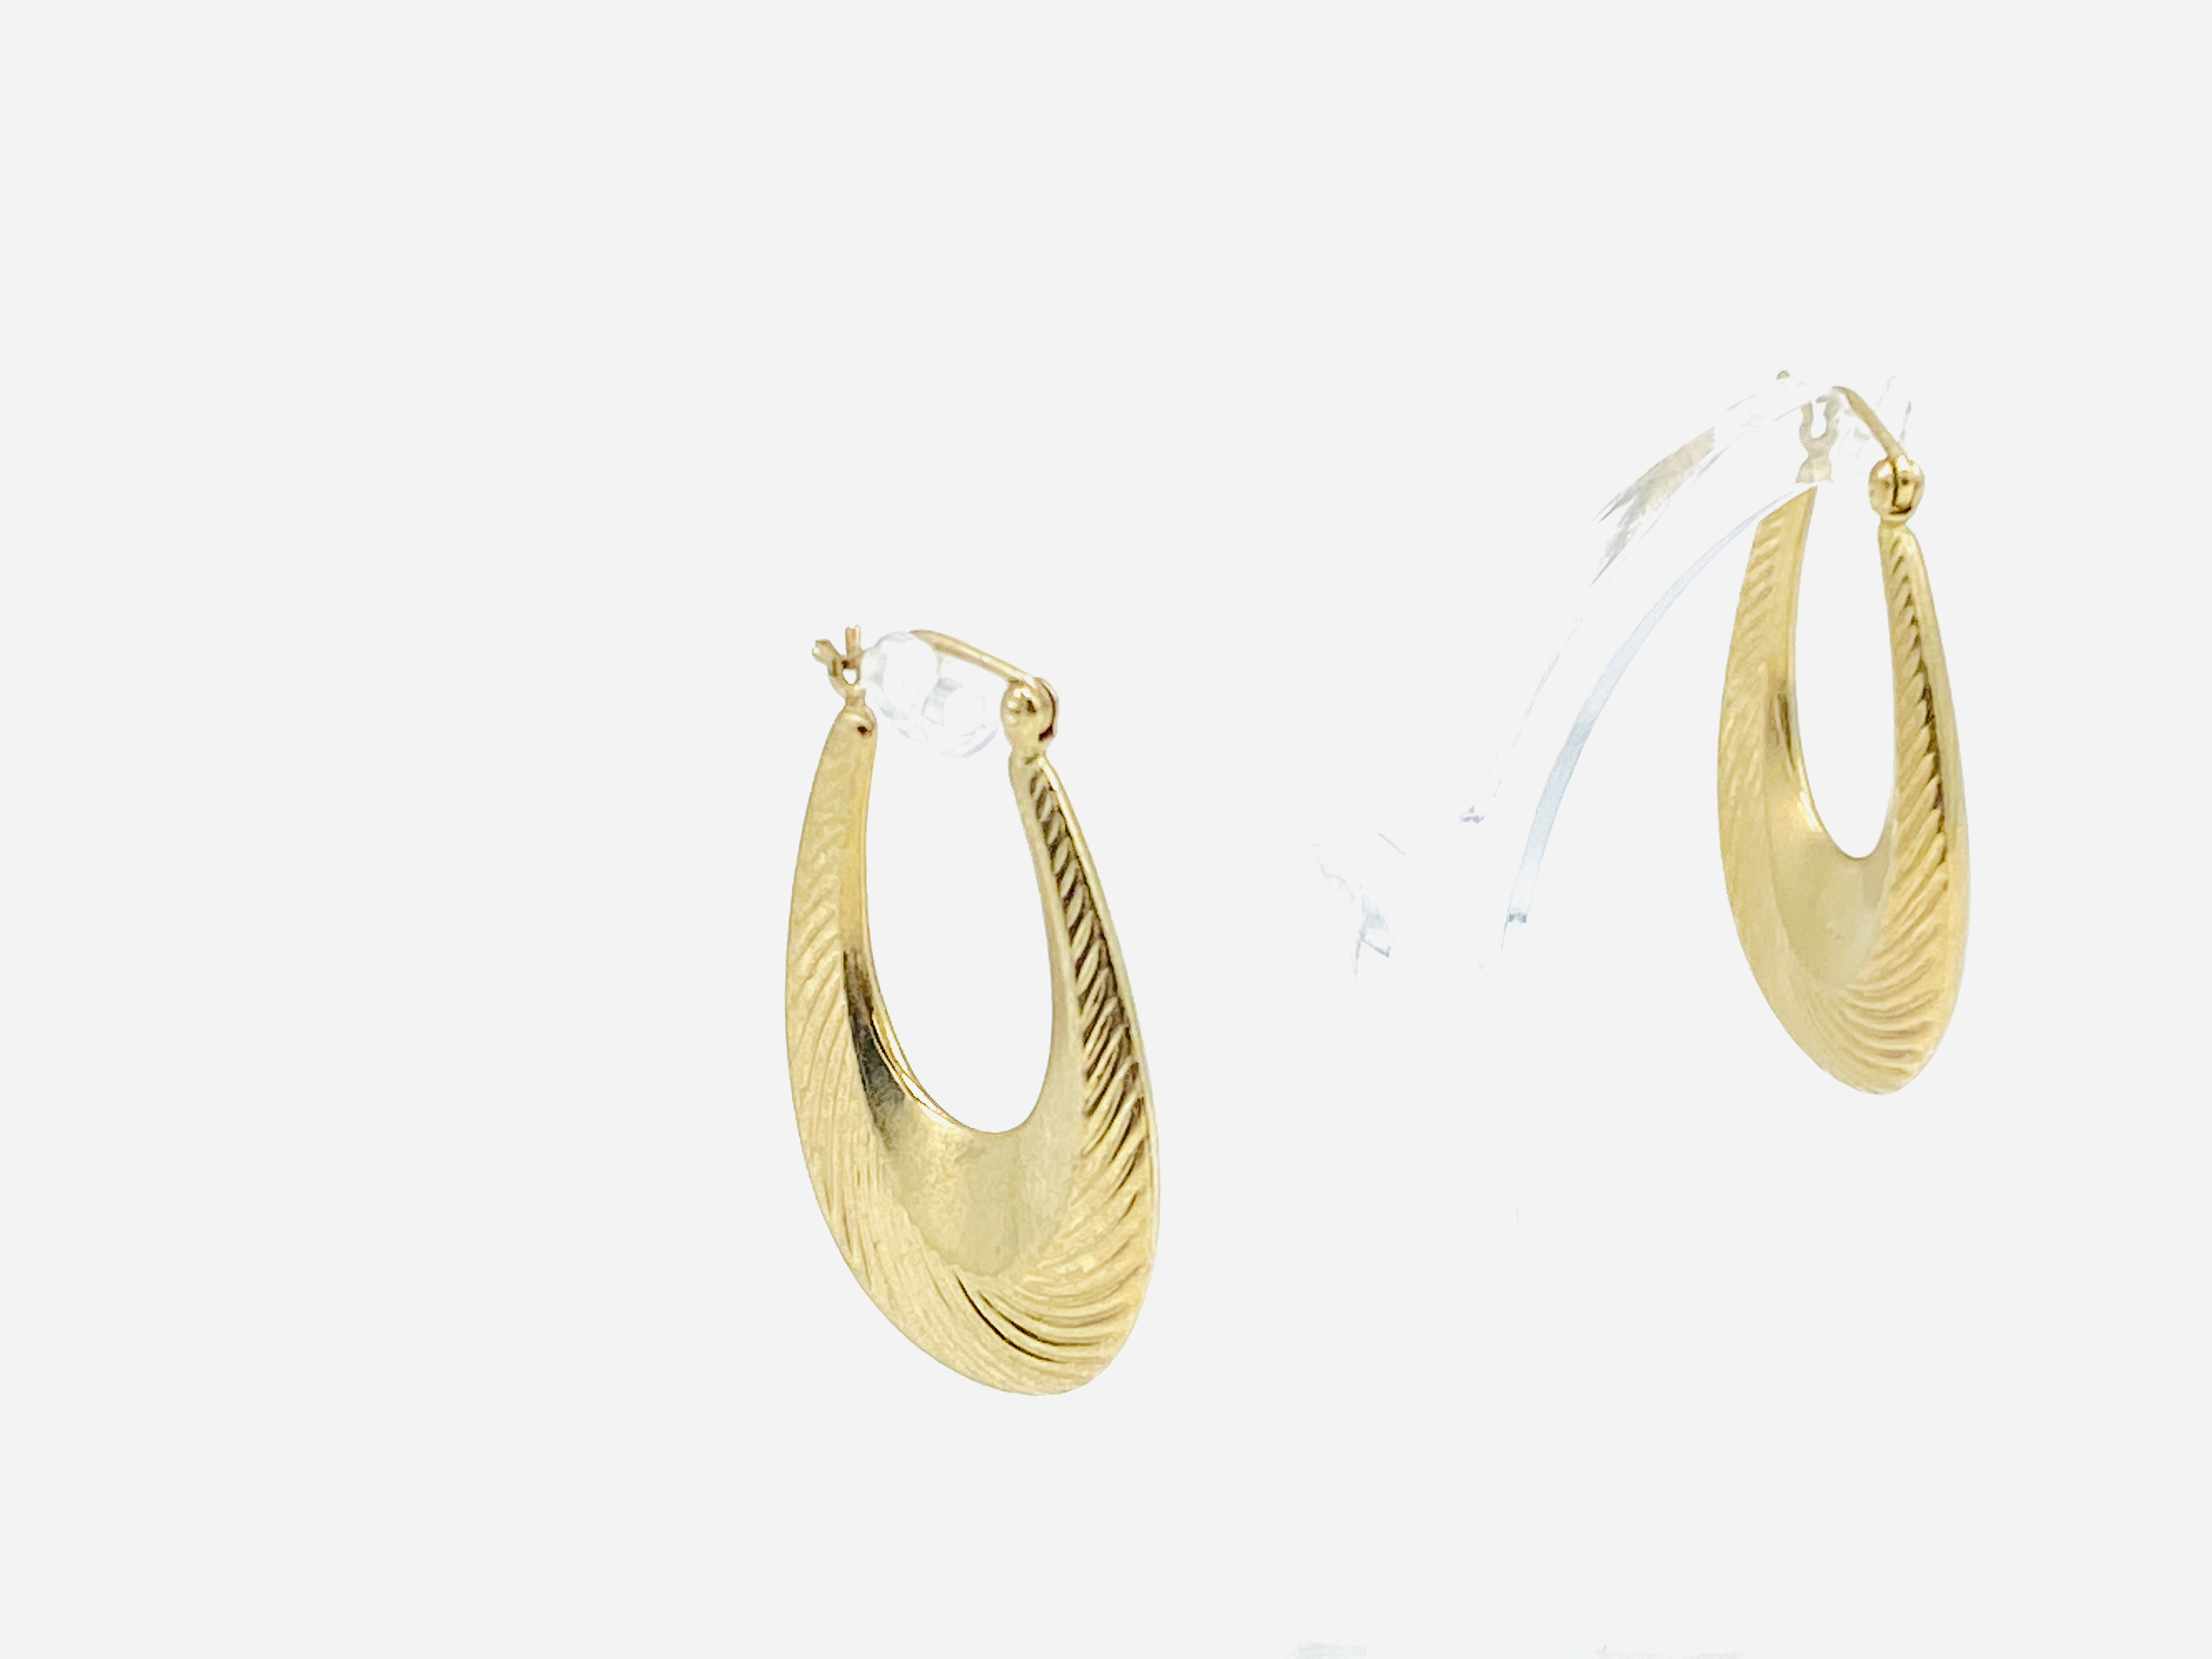 Pair of 9ct gold loop earrings